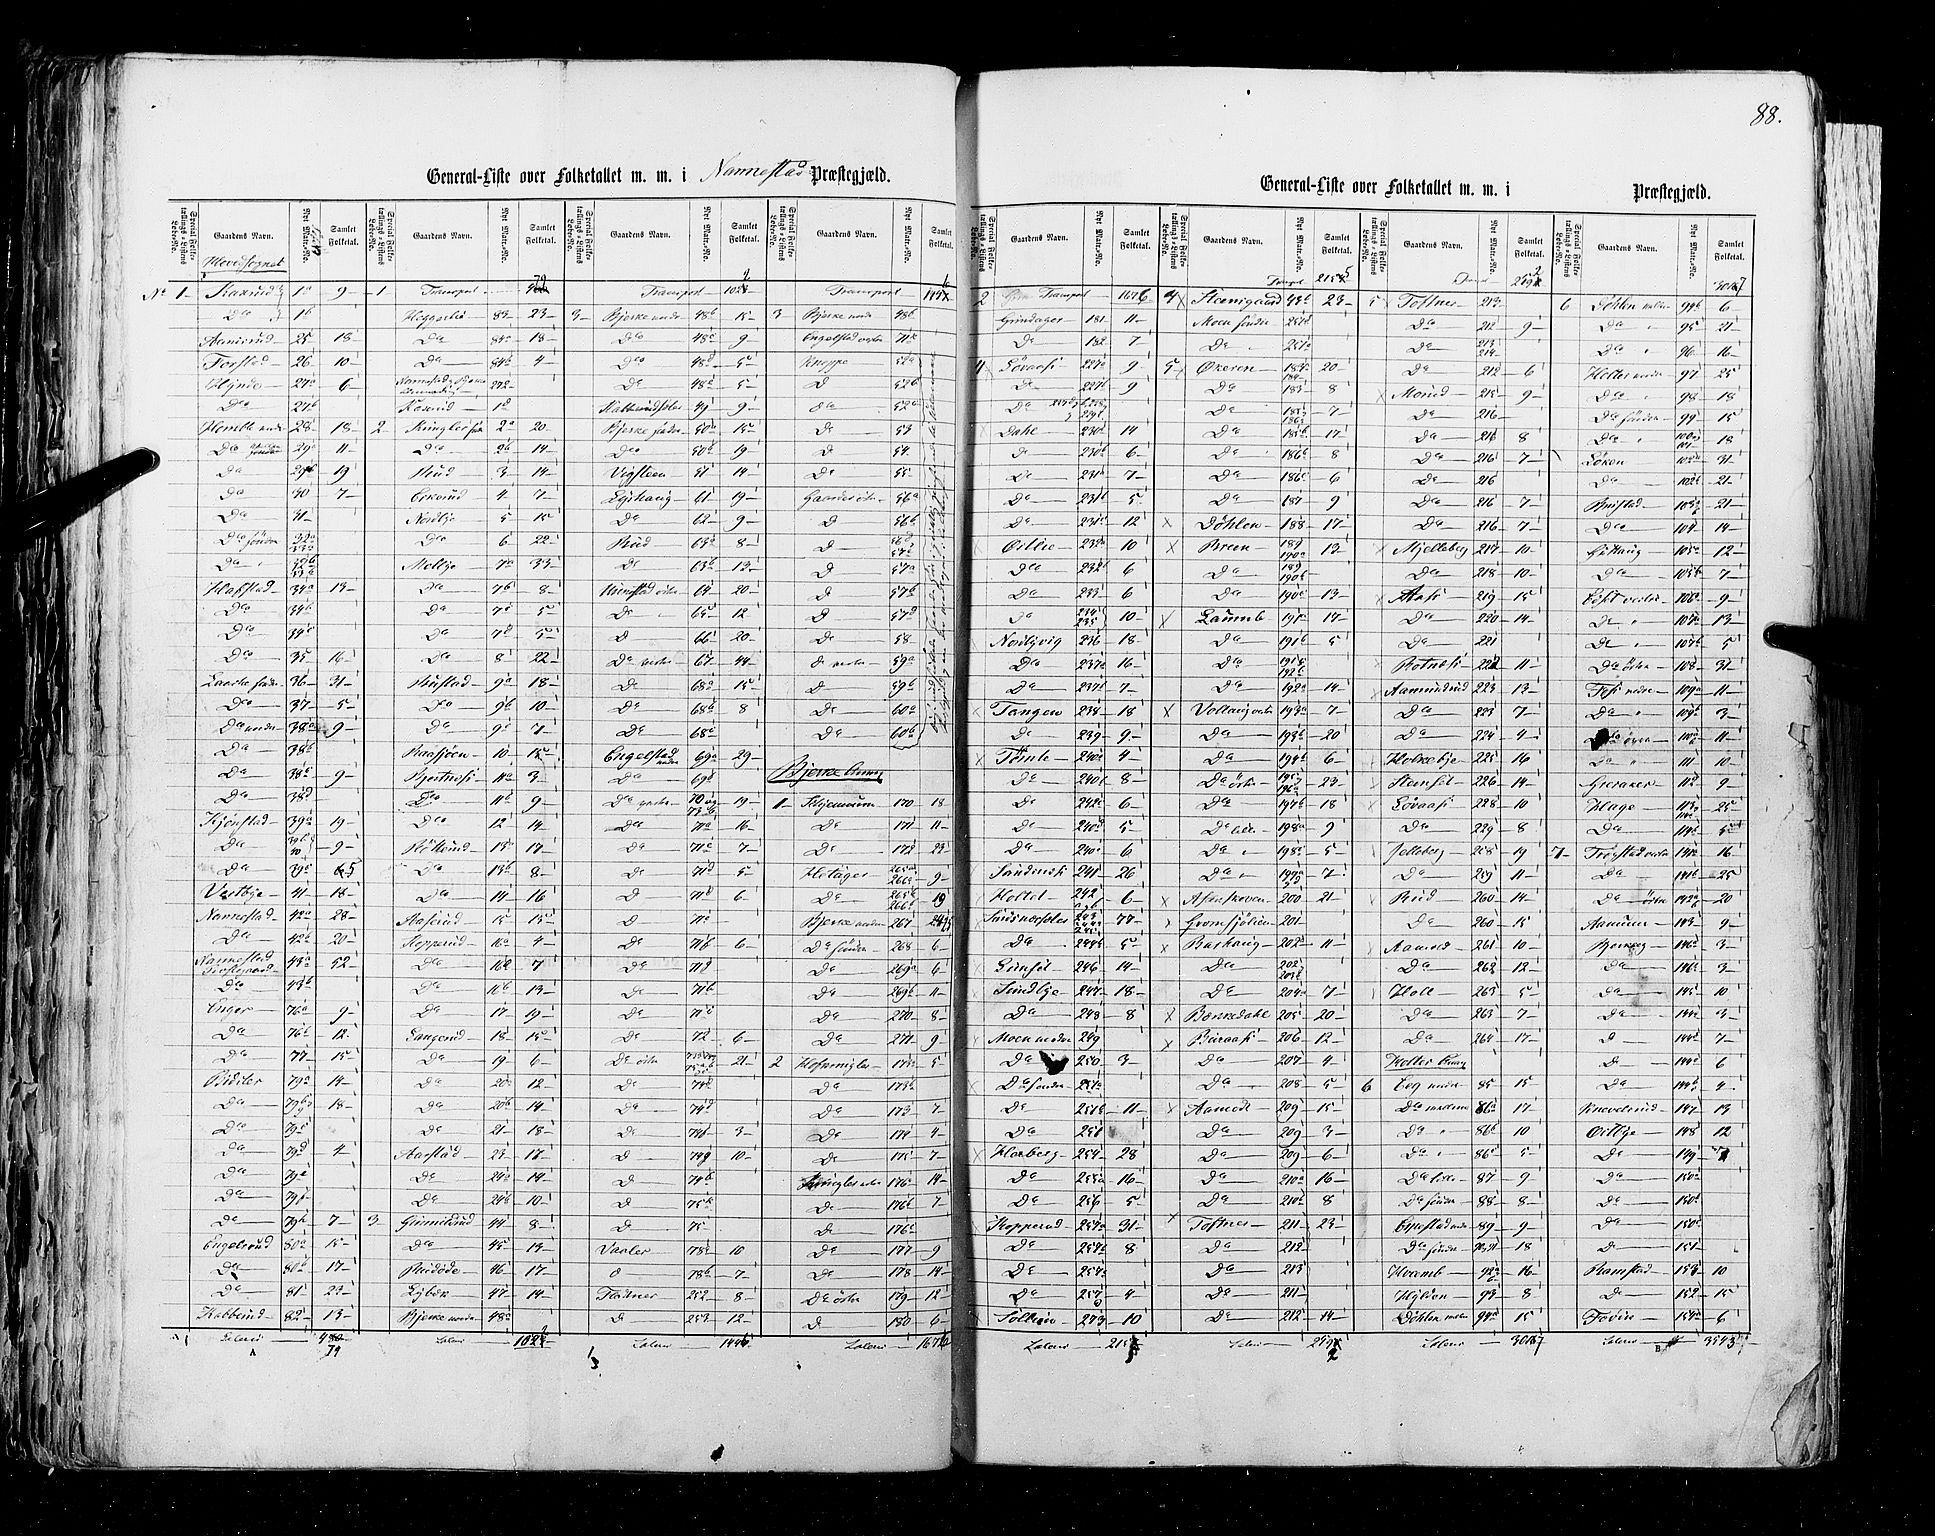 RA, Census 1855, vol. 1: Akershus amt, Smålenenes amt og Hedemarken amt, 1855, p. 88